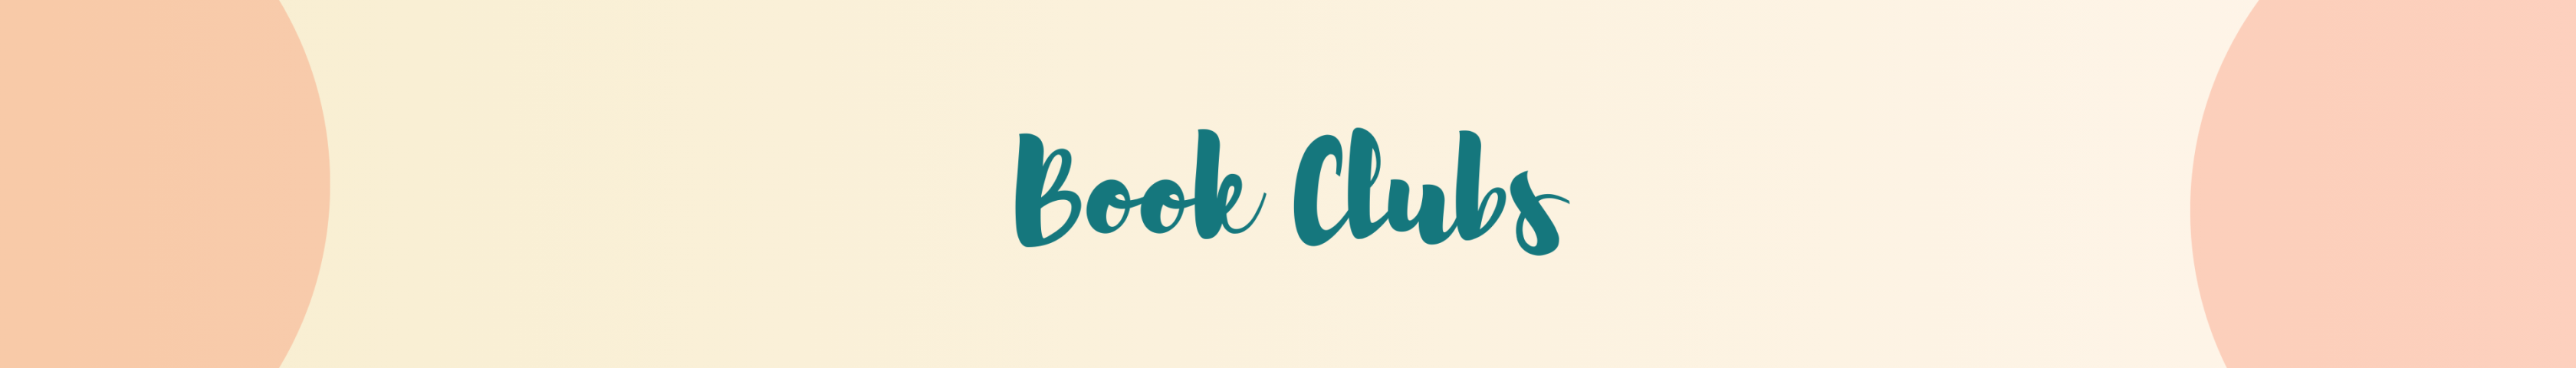 Book Clubs v.4